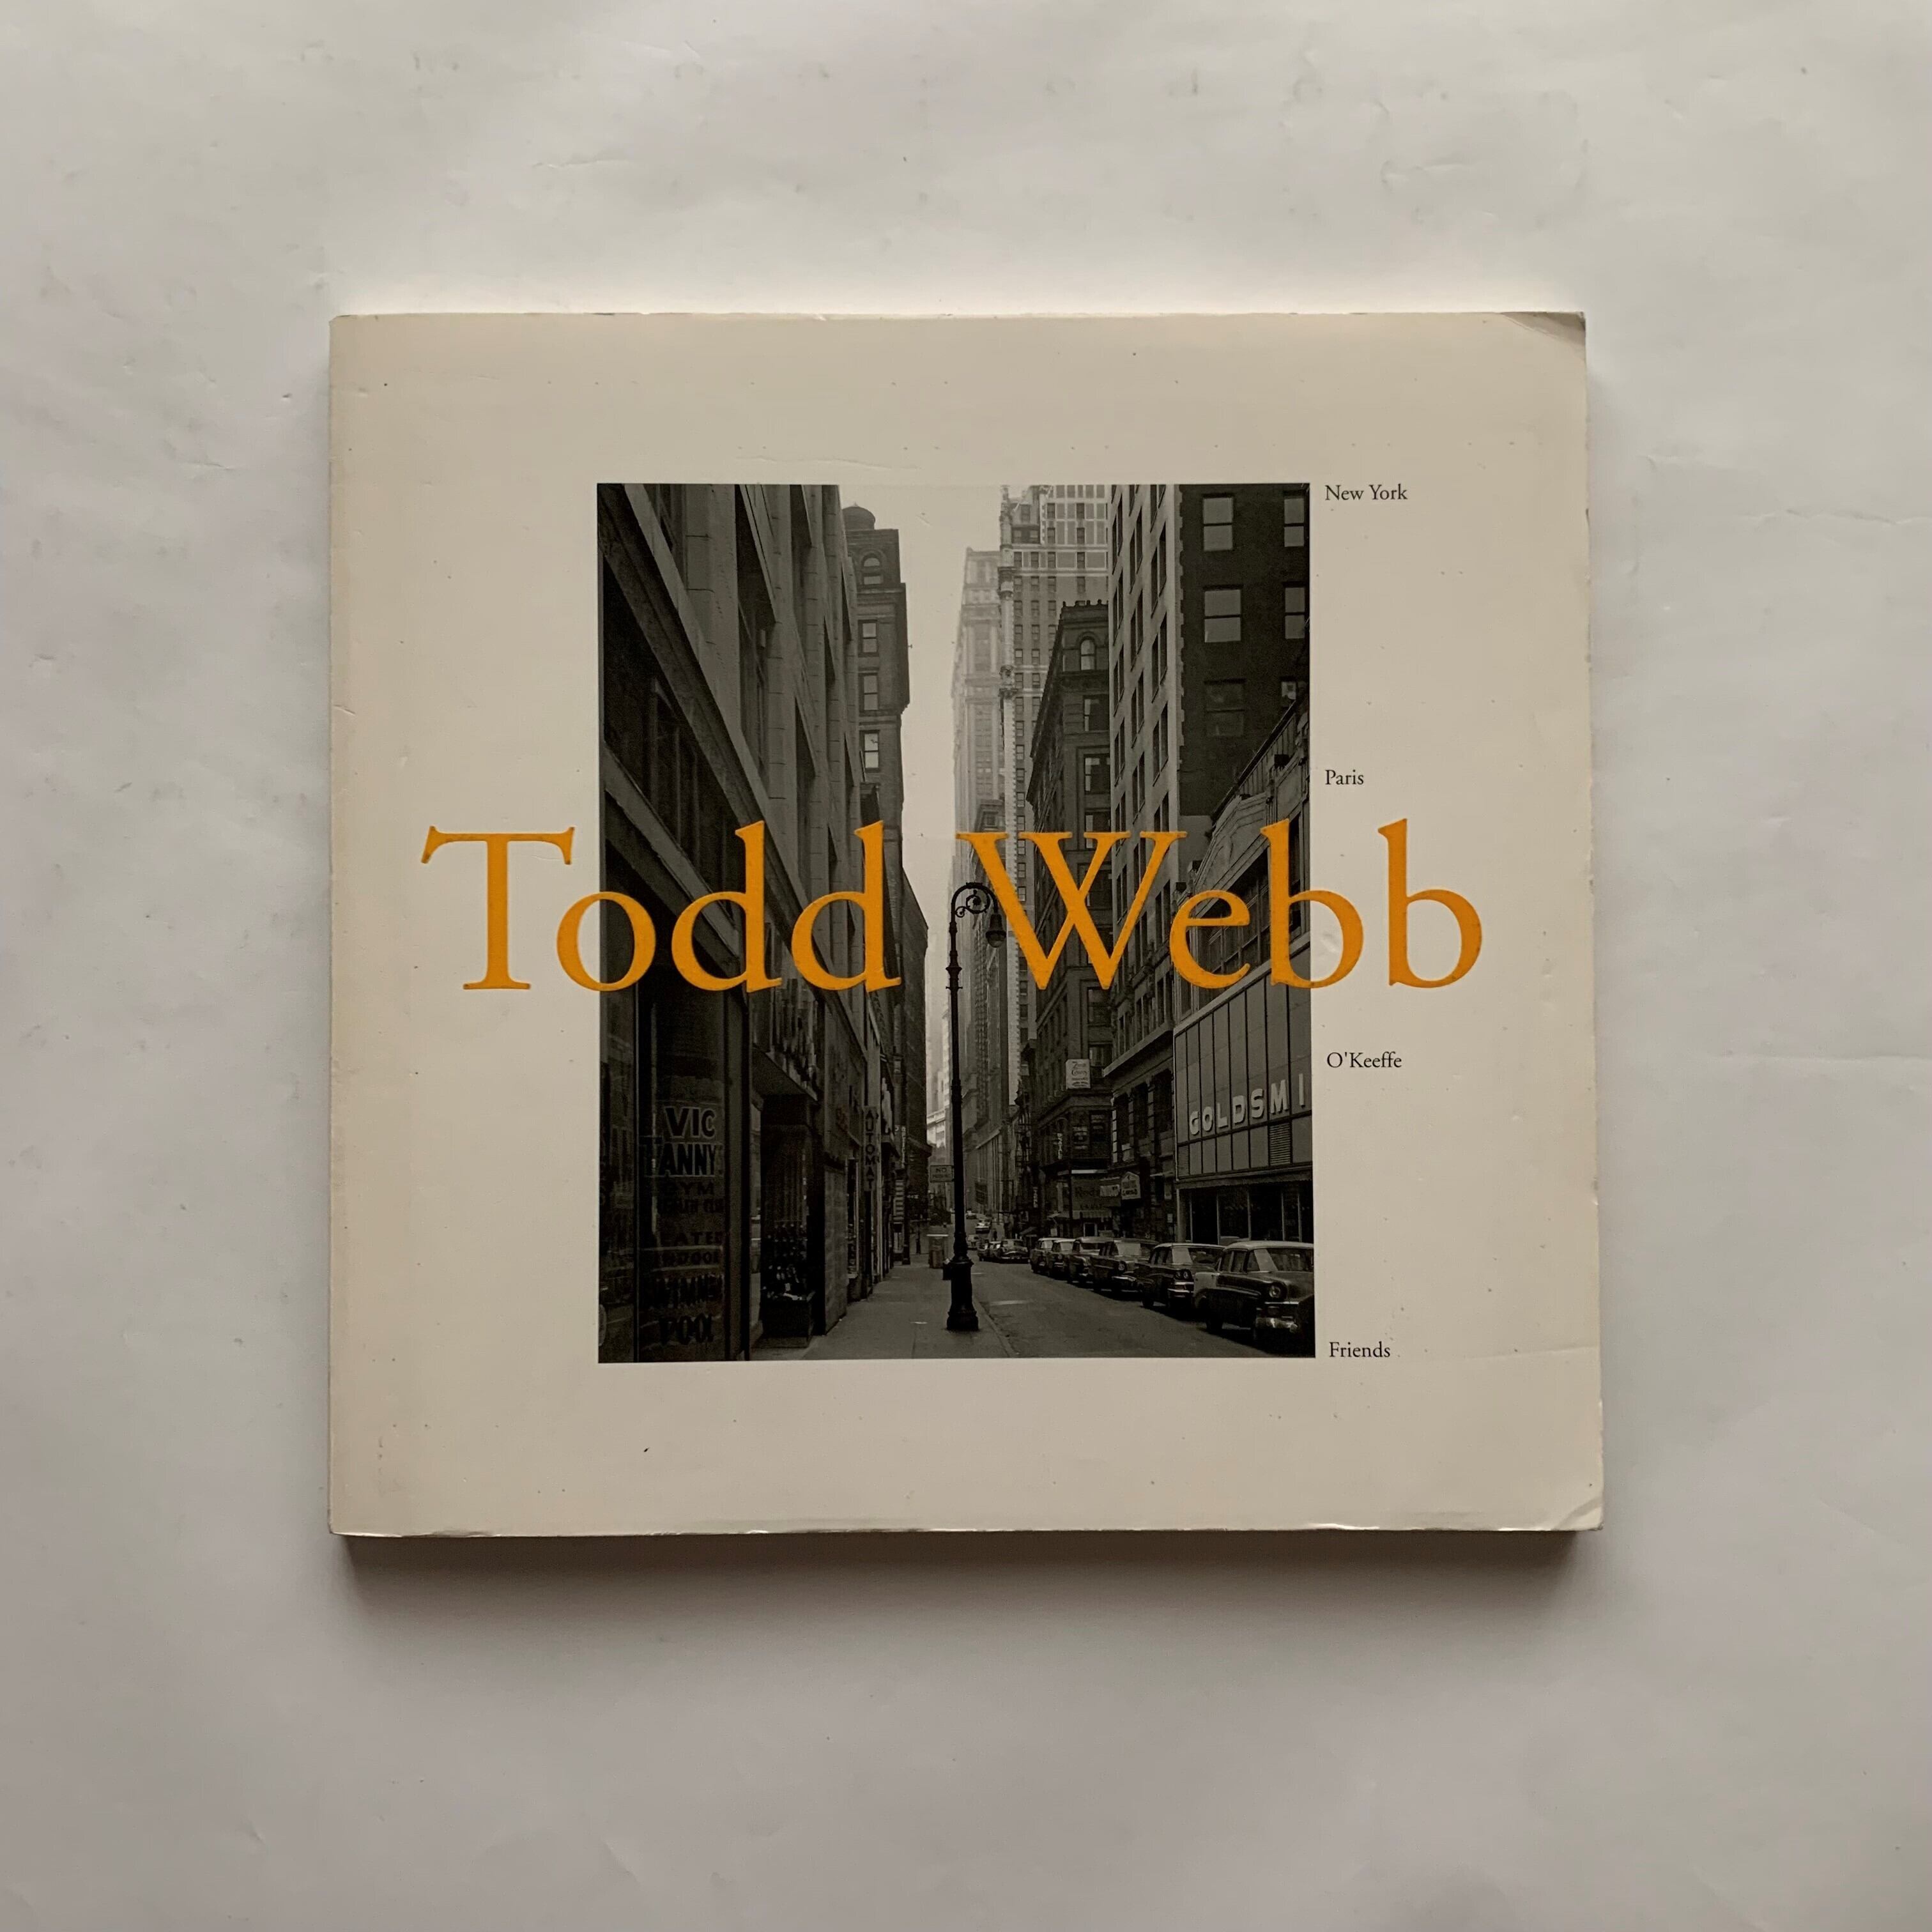 トッド・ウェッブ写真展 / Todd Webb